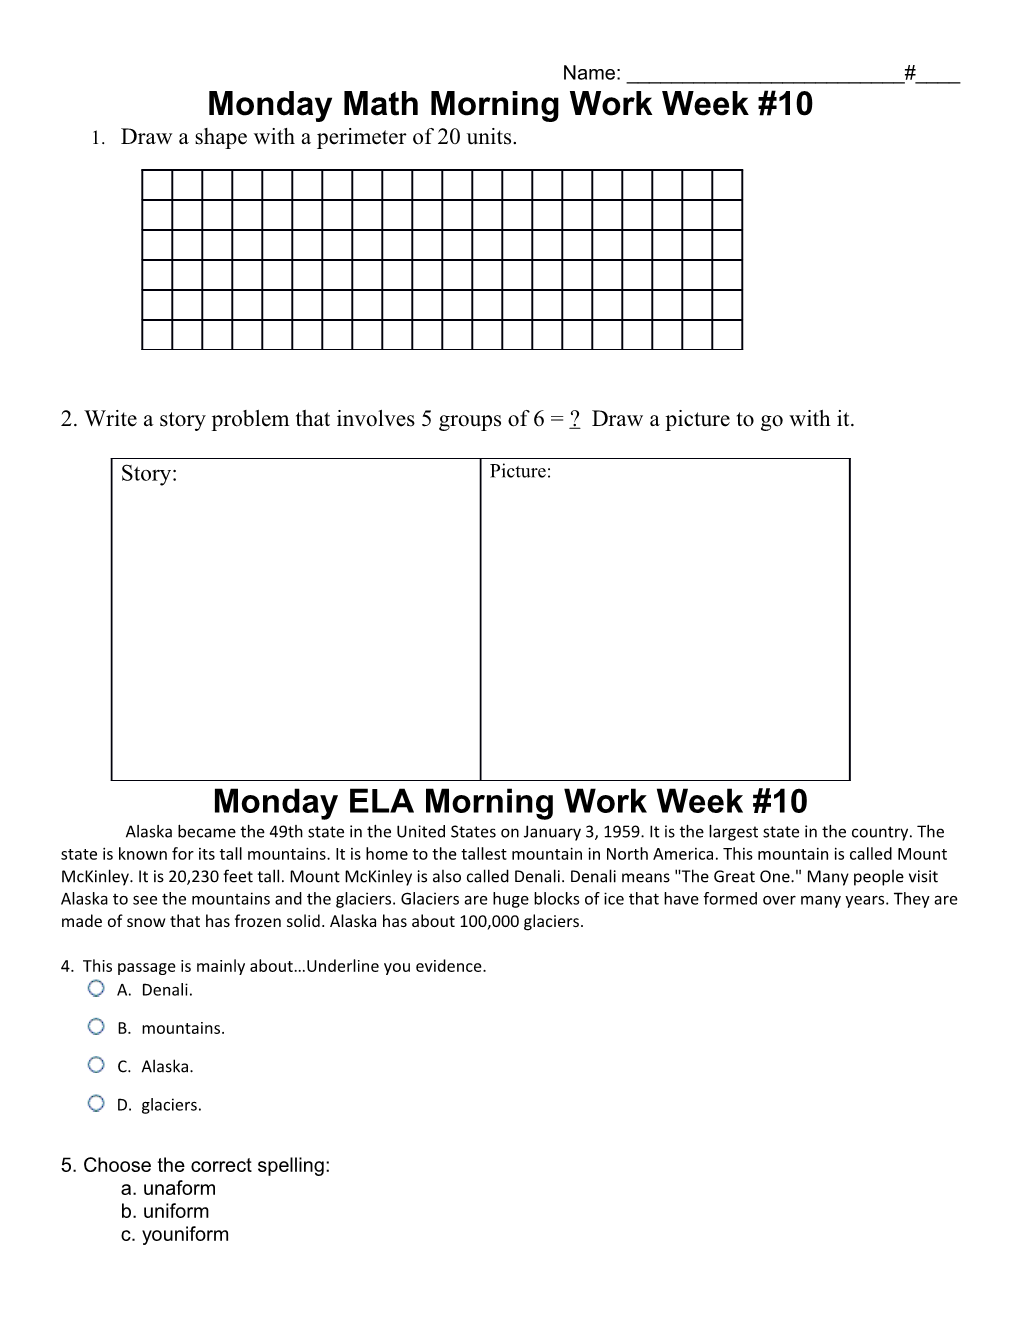 Monday Math Morning Work Week #10